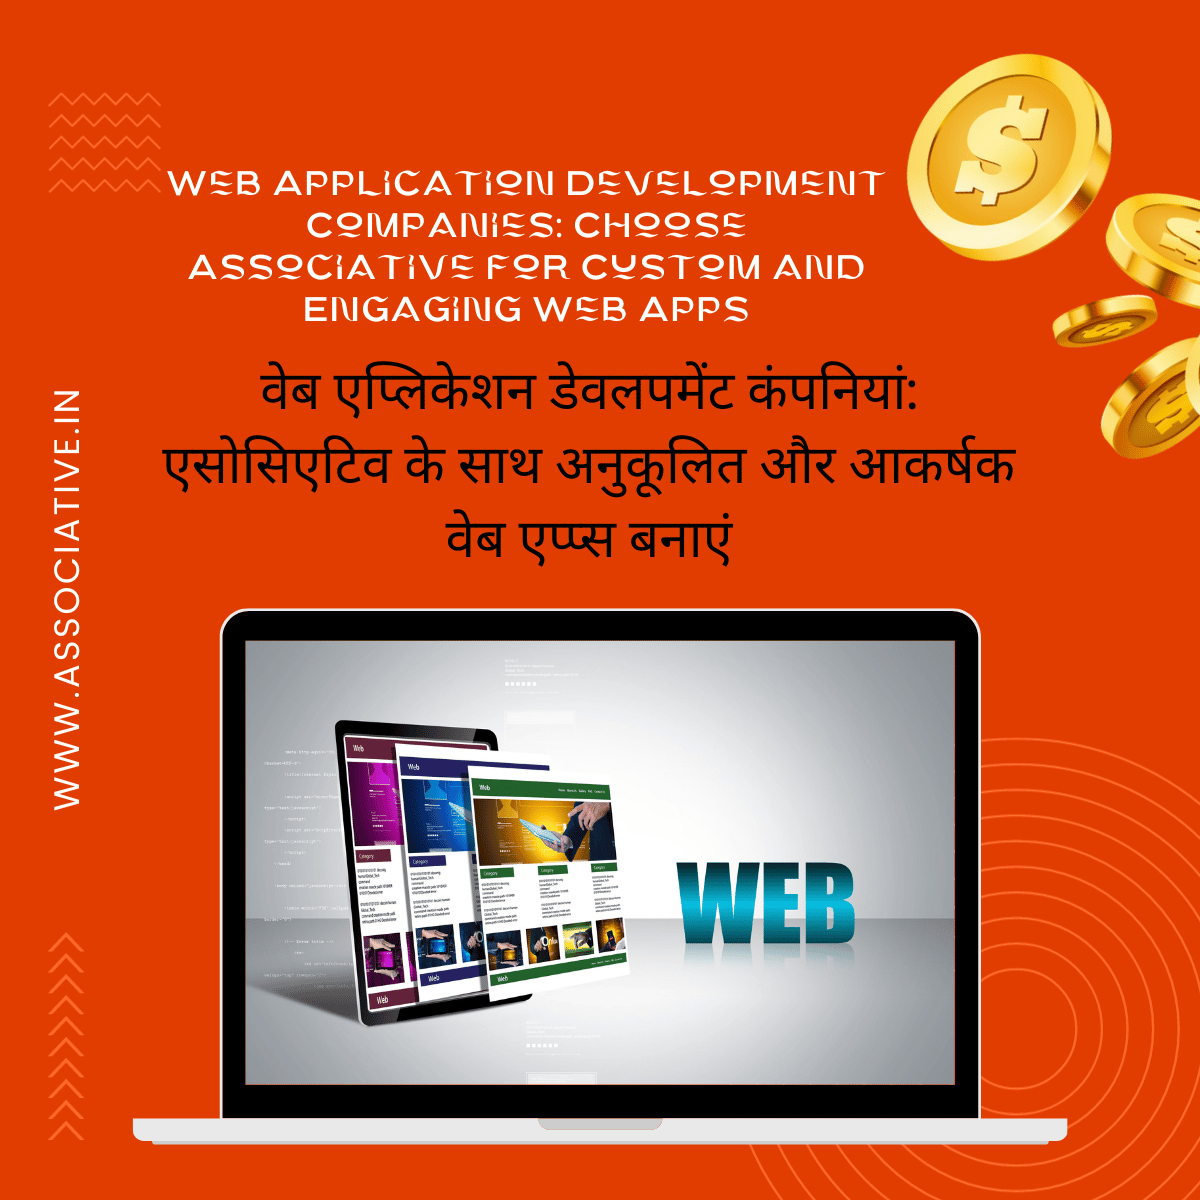 Web Application Development Companies: Choose Associative for Custom and Engaging Web Apps वेब एप्लिकेशन डेवलपमेंट कंपनियां: एसोसिएटिव के साथ अनुकूलित और आकर्षक वेब एप्प्स बनाएं